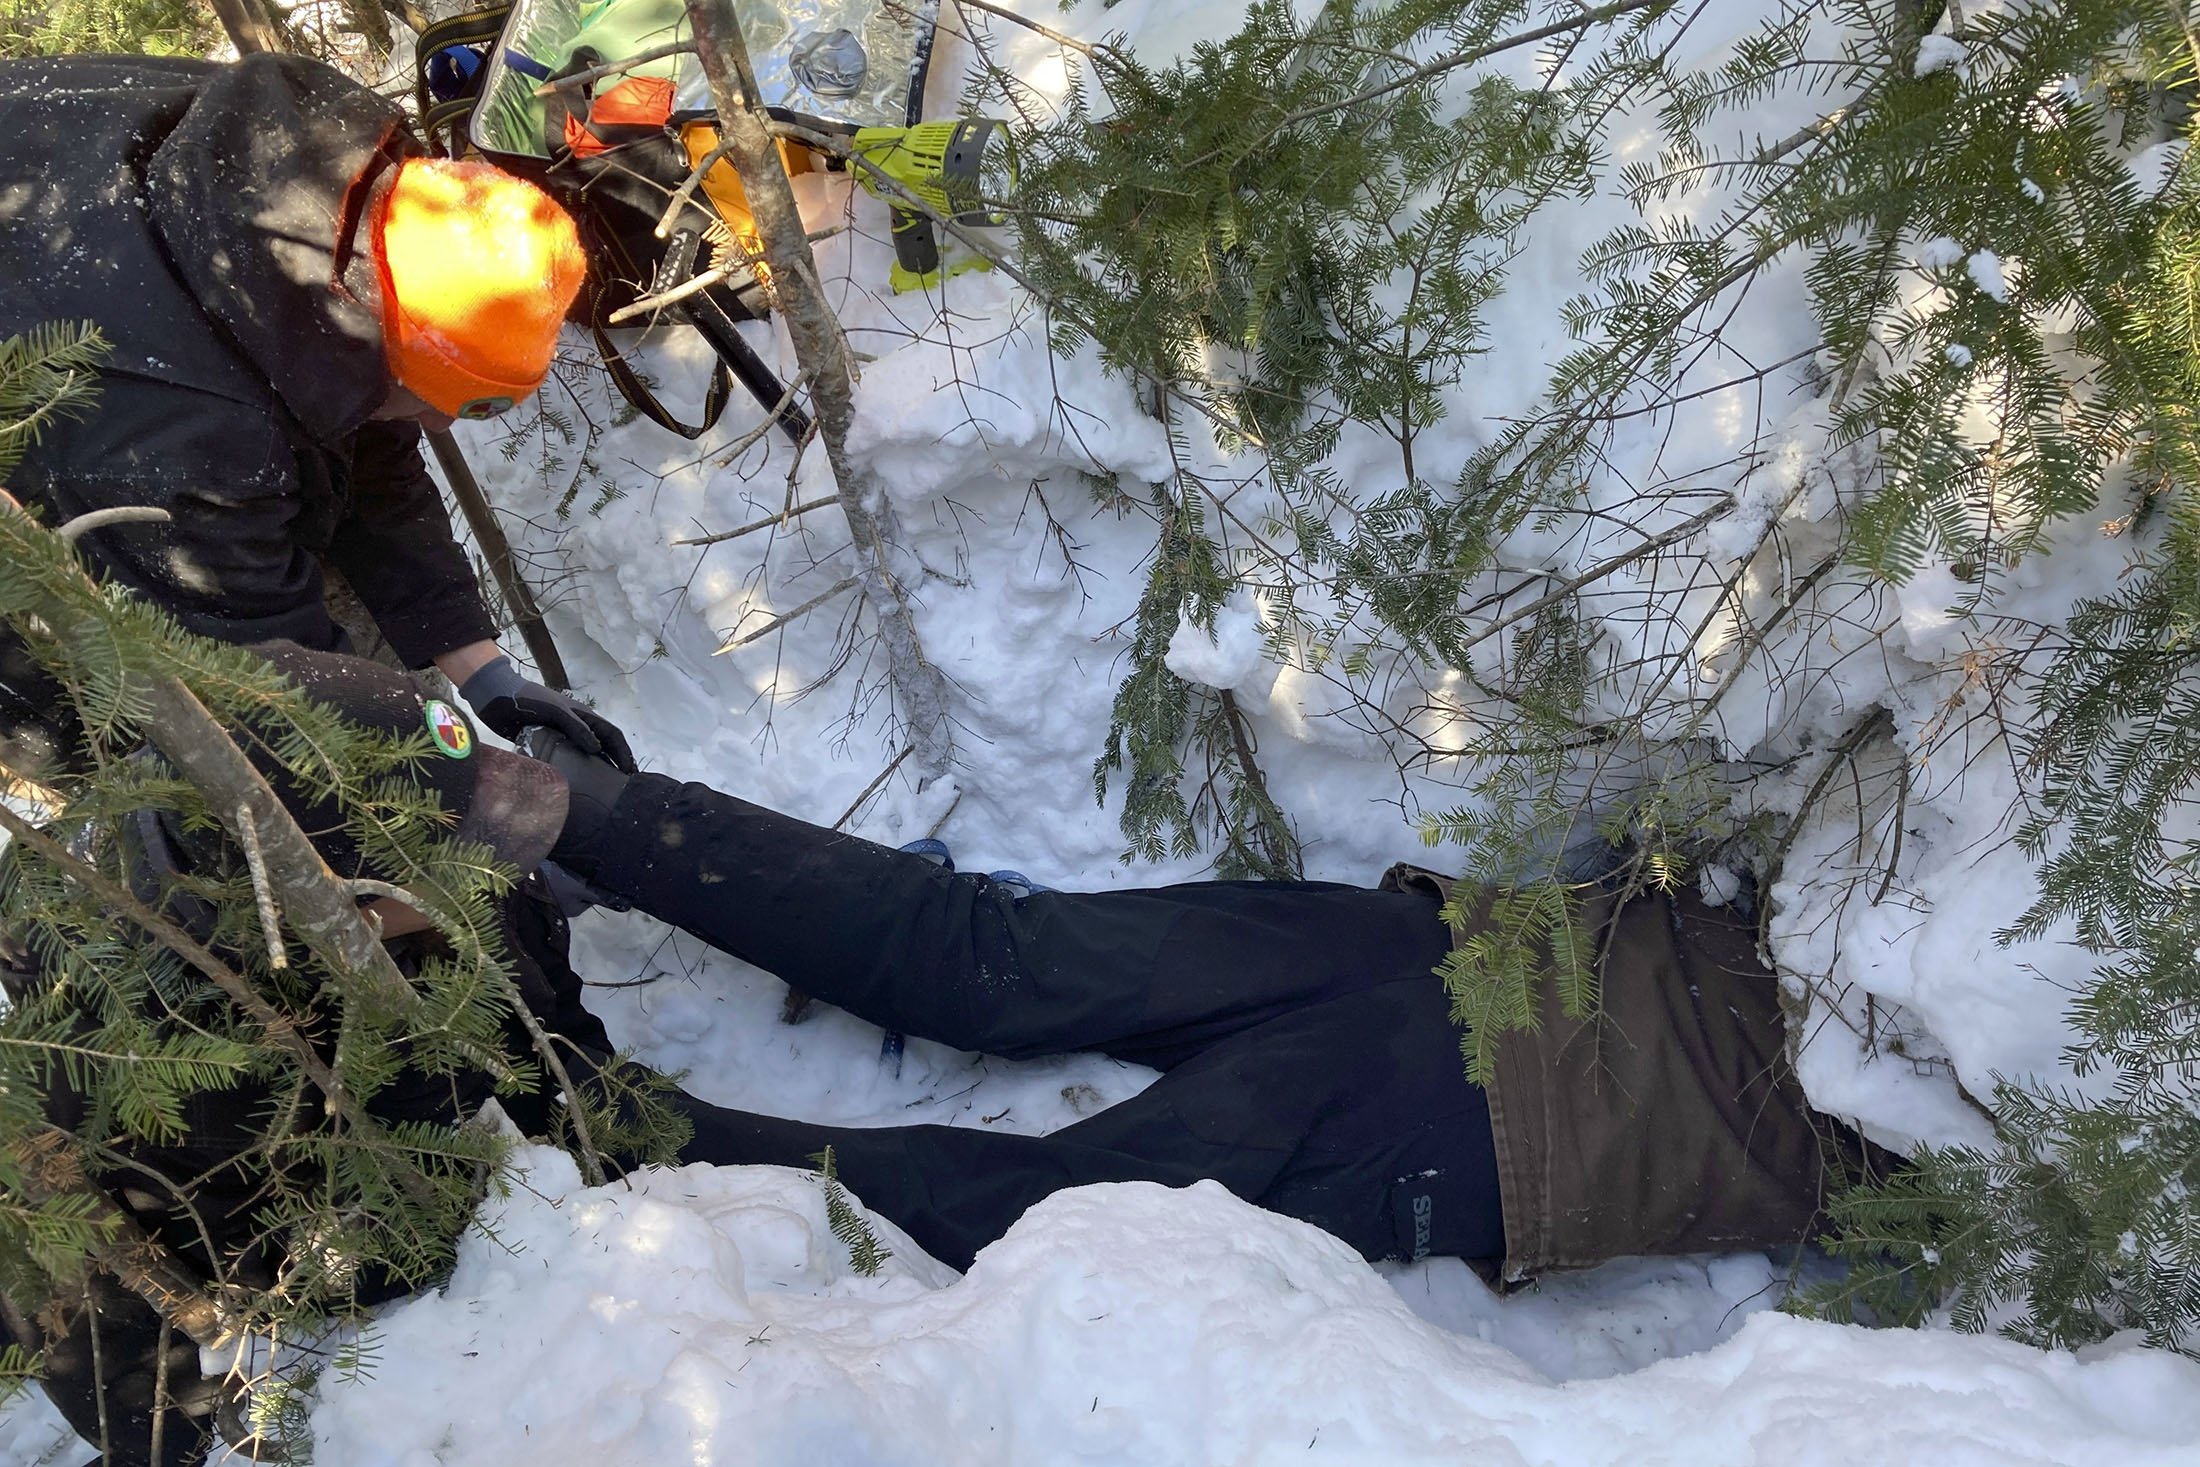 Todd Kautz, seorang peneliti pasca-doktoral dari Universitas Negeri New York, berbaring di perutnya untuk mengambil sampel biologis dari beruang yang sedang berhibernasi di sarangnya saat seorang rekan memegang kakinya, di Grand Portage, Minnesota, AS, 2 Maret 2022 (Foto AP)